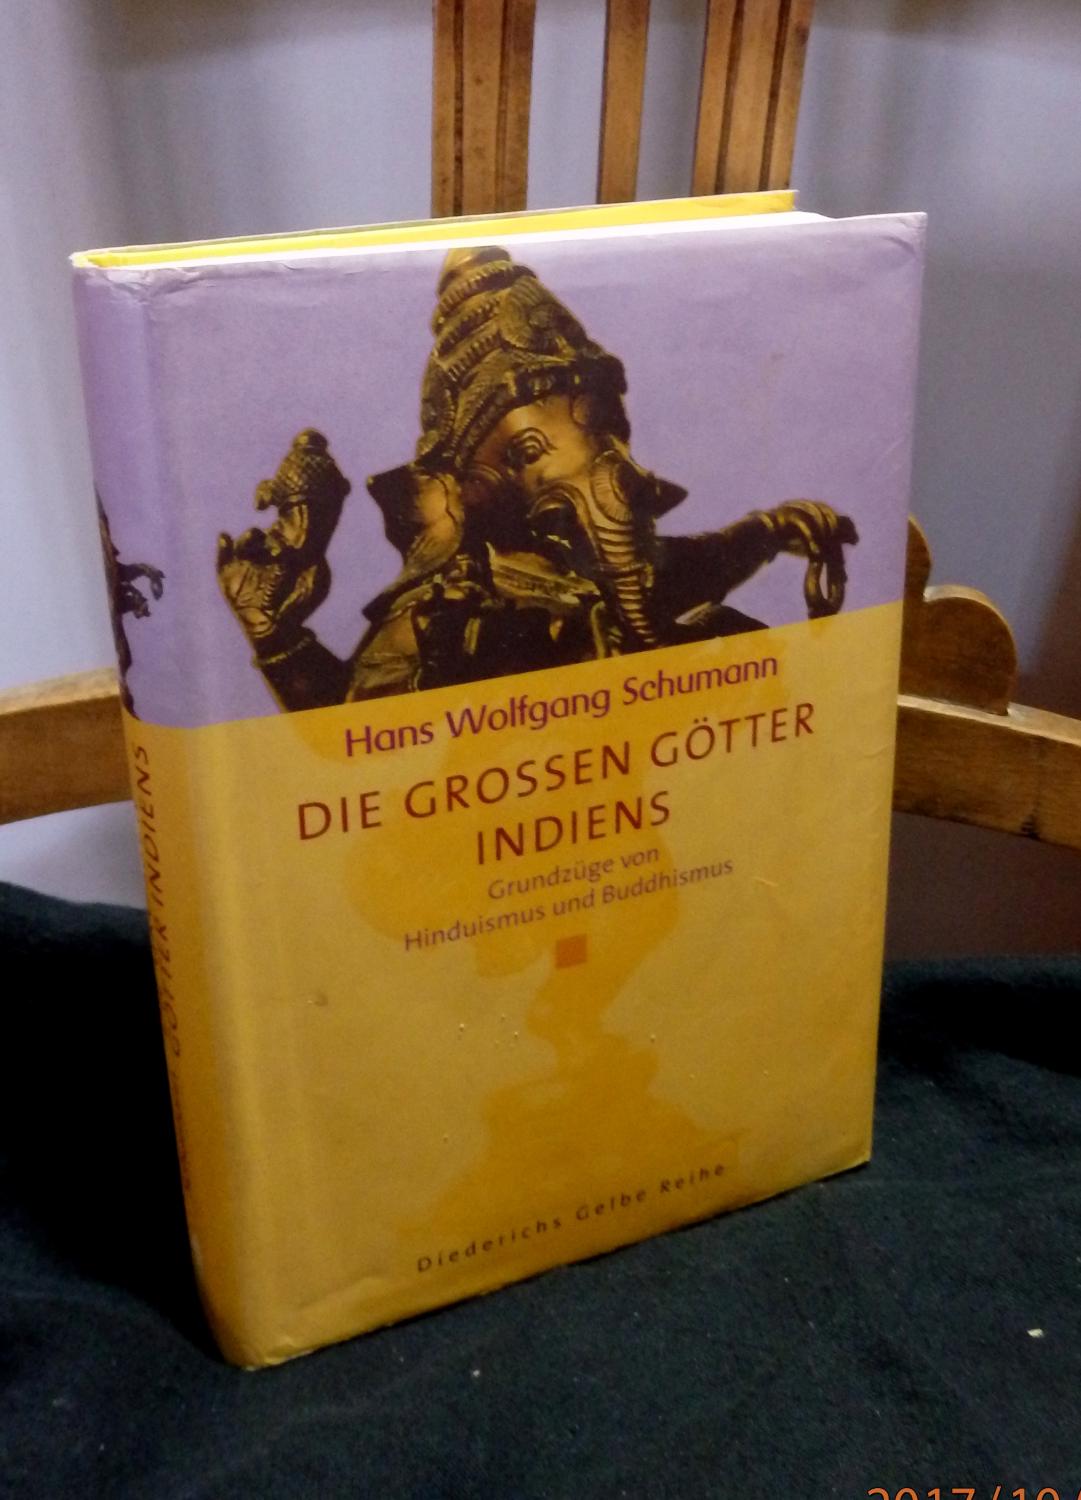 Die grossen Götter Indiens. Grundzüge von Hinduismus und Buddhismus.